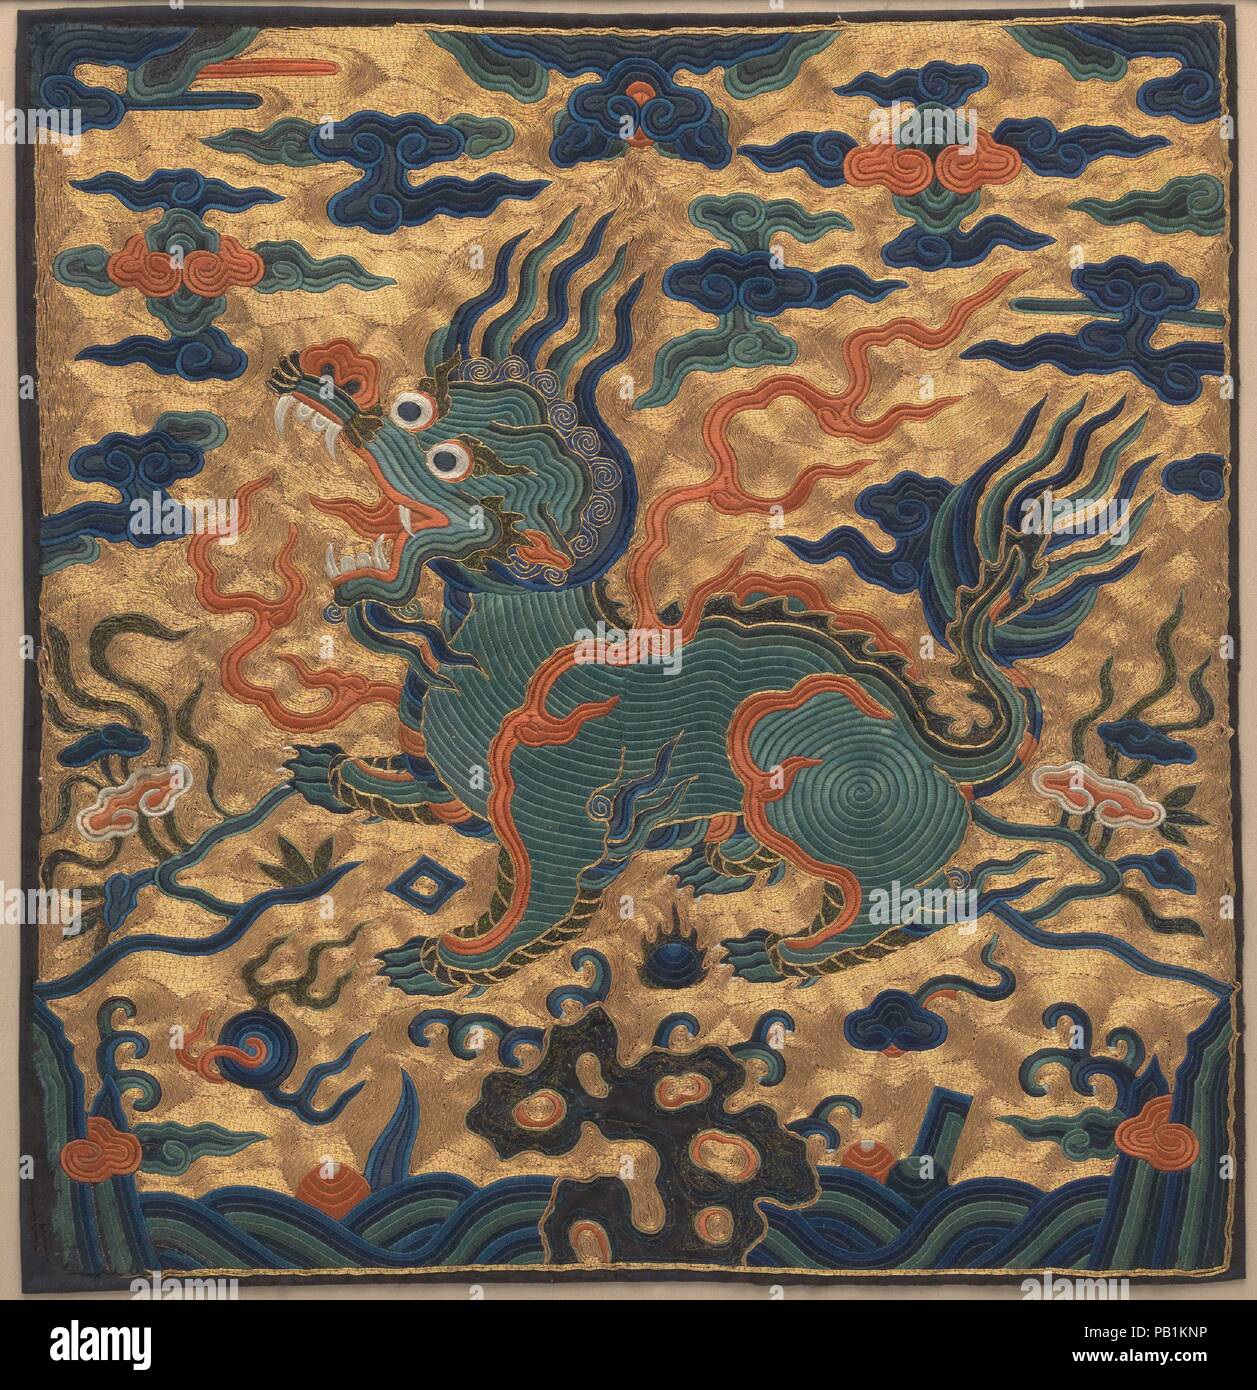 Insigne de rang avec l'ours stylisé. Culture : la Chine. Dimensions : hors tout : 13 1/4 x 13 in. (33,7 x 33 cm). Date : le 18e siècle. Musée : Metropolitan Museum of Art, New York, USA. Banque D'Images